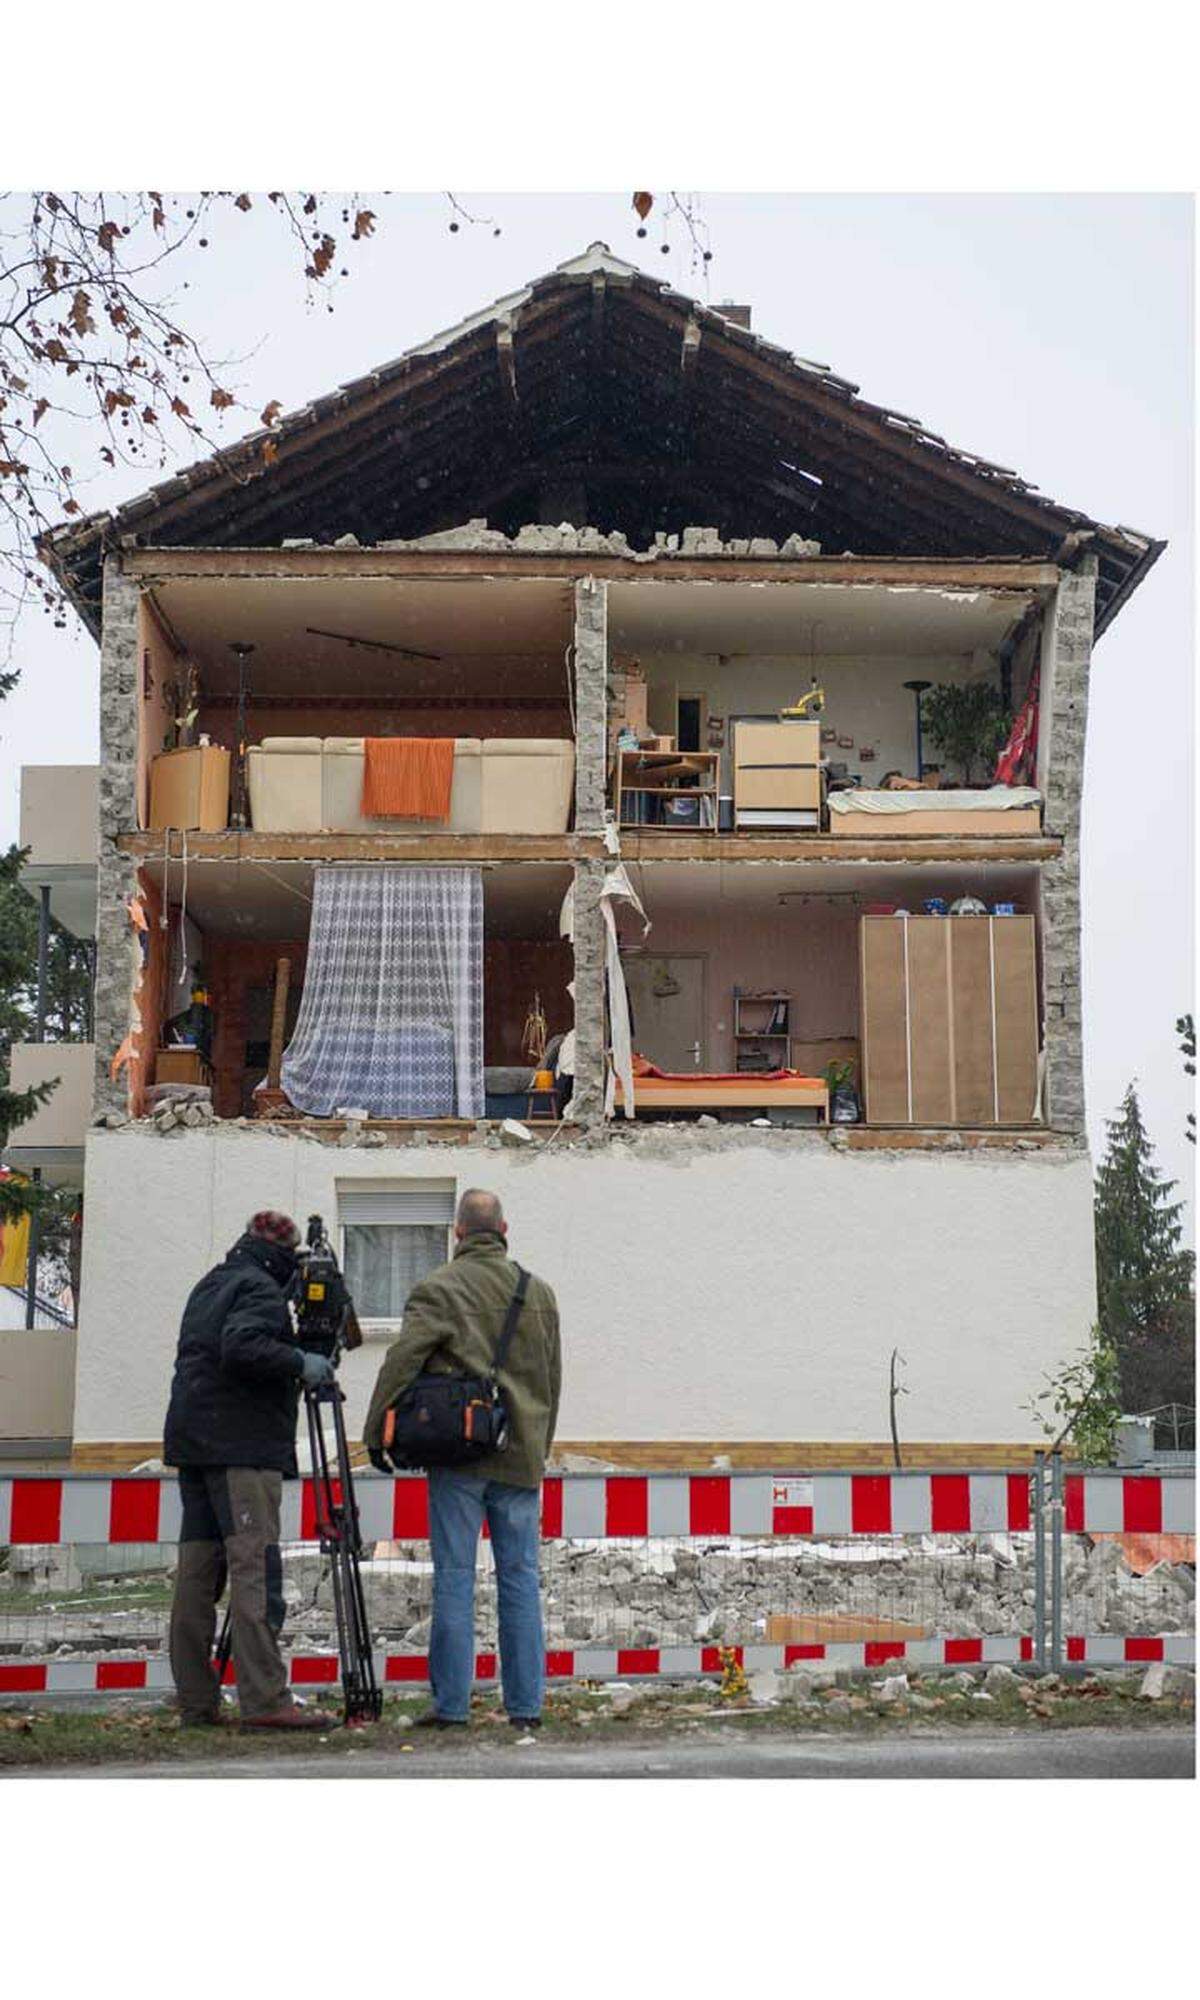 Rätselhaftes Unglück in Rheinland-Pfalz: Die Fassade eines Mehrfamilienhauses in Frankenthal ist am Dienstag aus zunächst unbekannten Gründen komplett eingestürzt. Die acht Bewohner des dreistöckigen Gebäudes blieben nach Angaben einer Polizeisprecherin wie durch ein Wunder unverletzt.